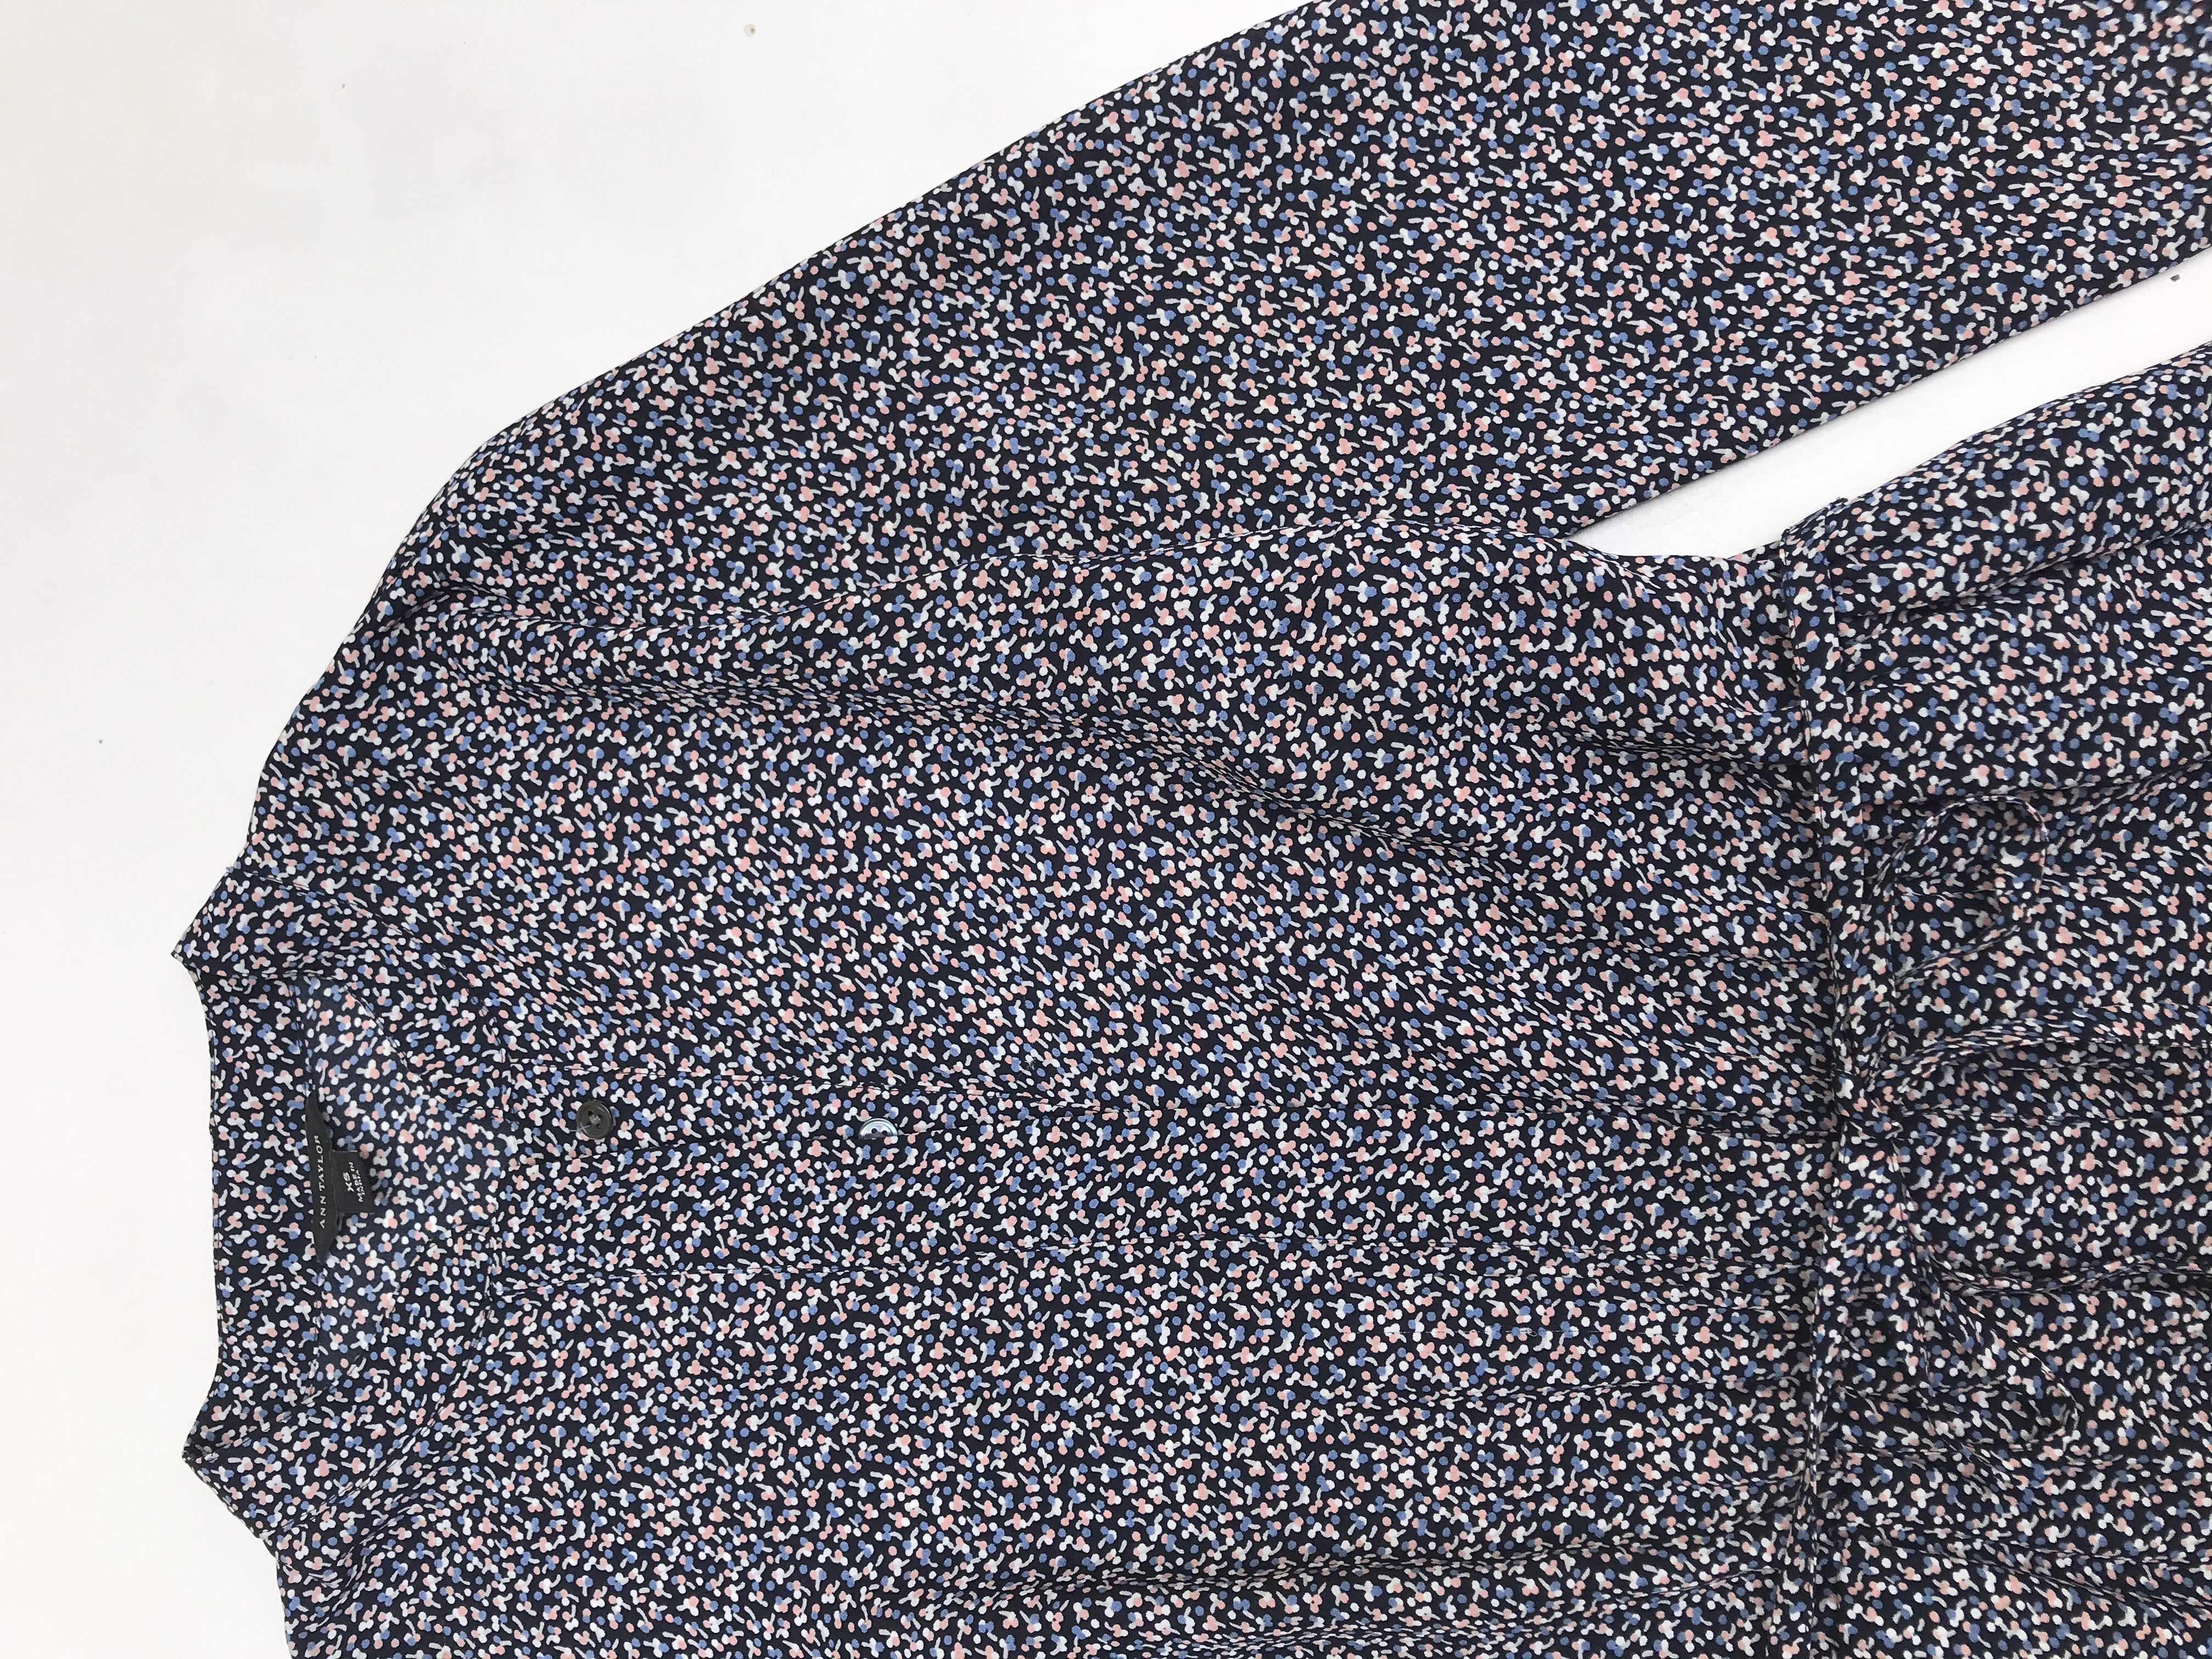 Vestido Ann Taylor azul con mini print florcitas, cuello nerú, botones a lo largo, elástico en la cintura y forro en la falda. Busto 90cm Cintura 68 (sin estirar)Largo 87cm. Precio original S/ 500